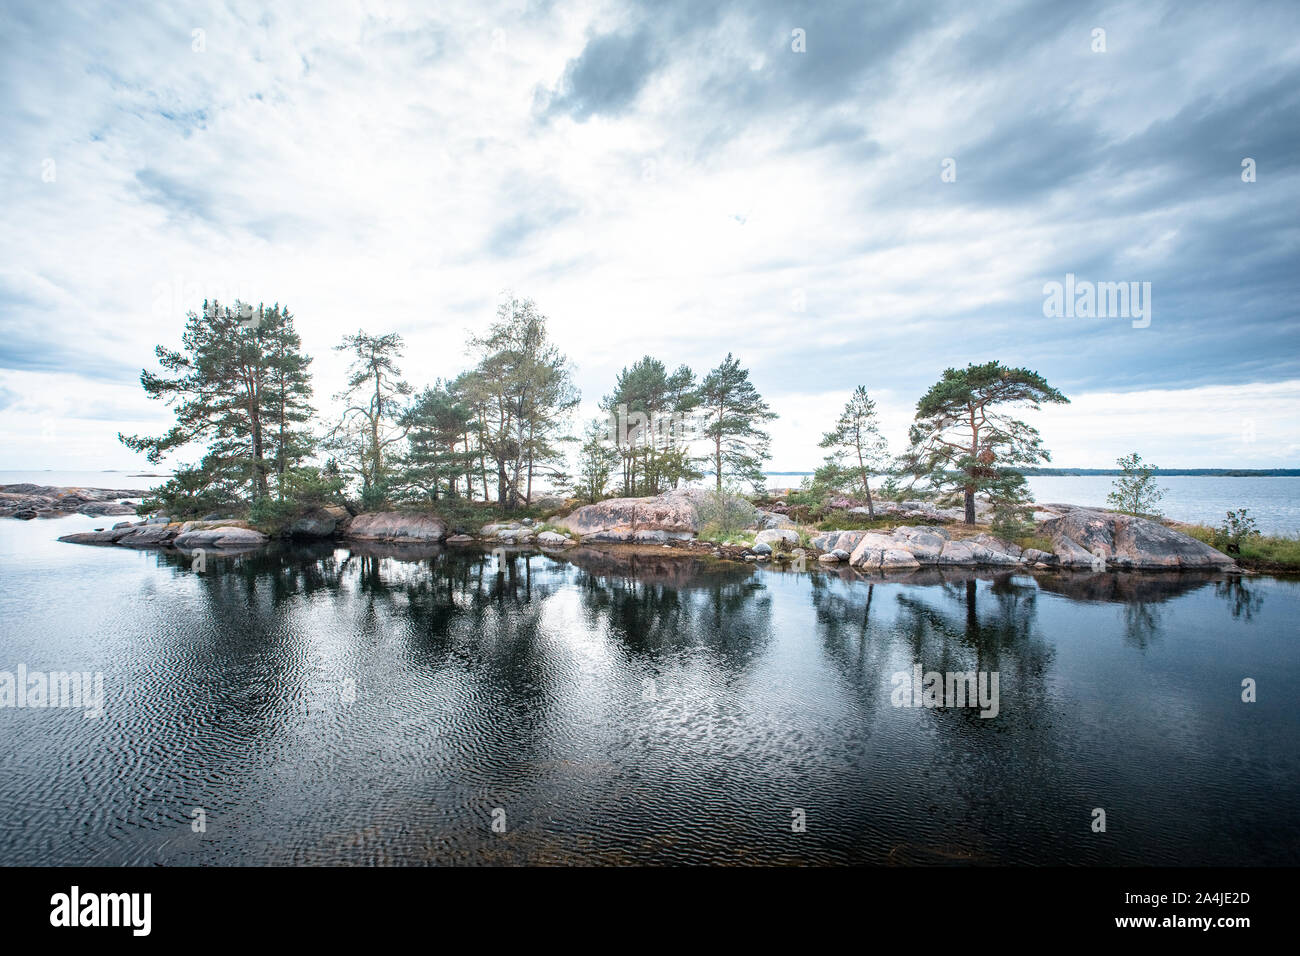 Les arbres sur l'île en Suède avec la réflexion d'un ciel nuageux Banque D'Images